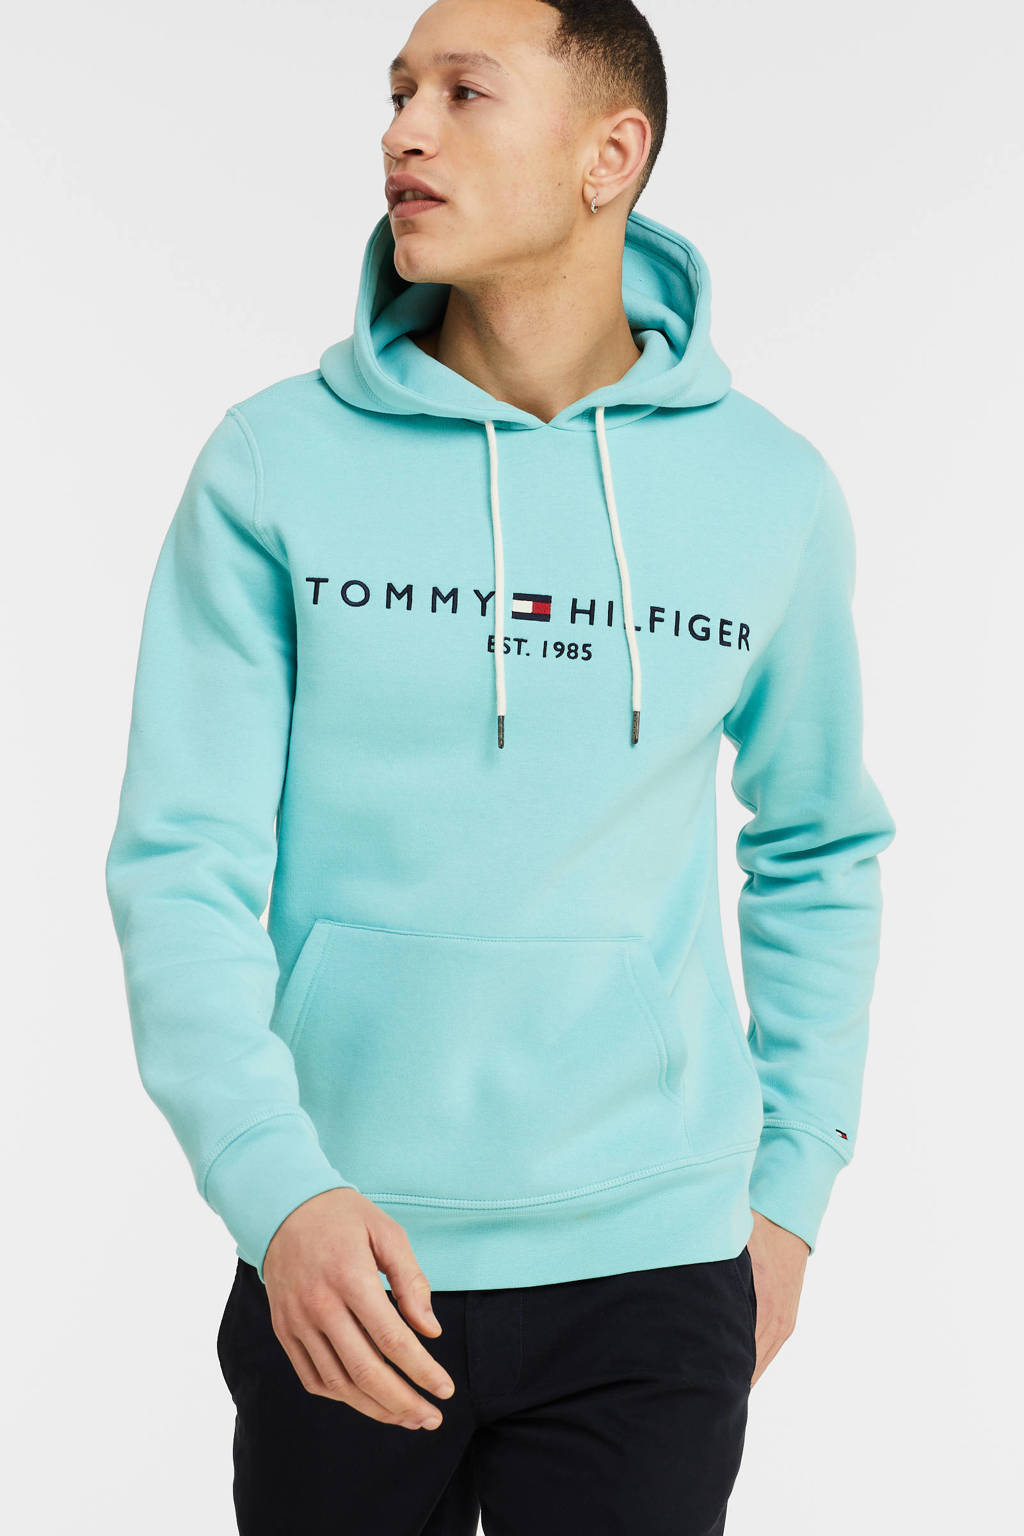 onderwijzen Bedrijf racket Tommy Hilfiger hoodie met logo arctic aqua | wehkamp